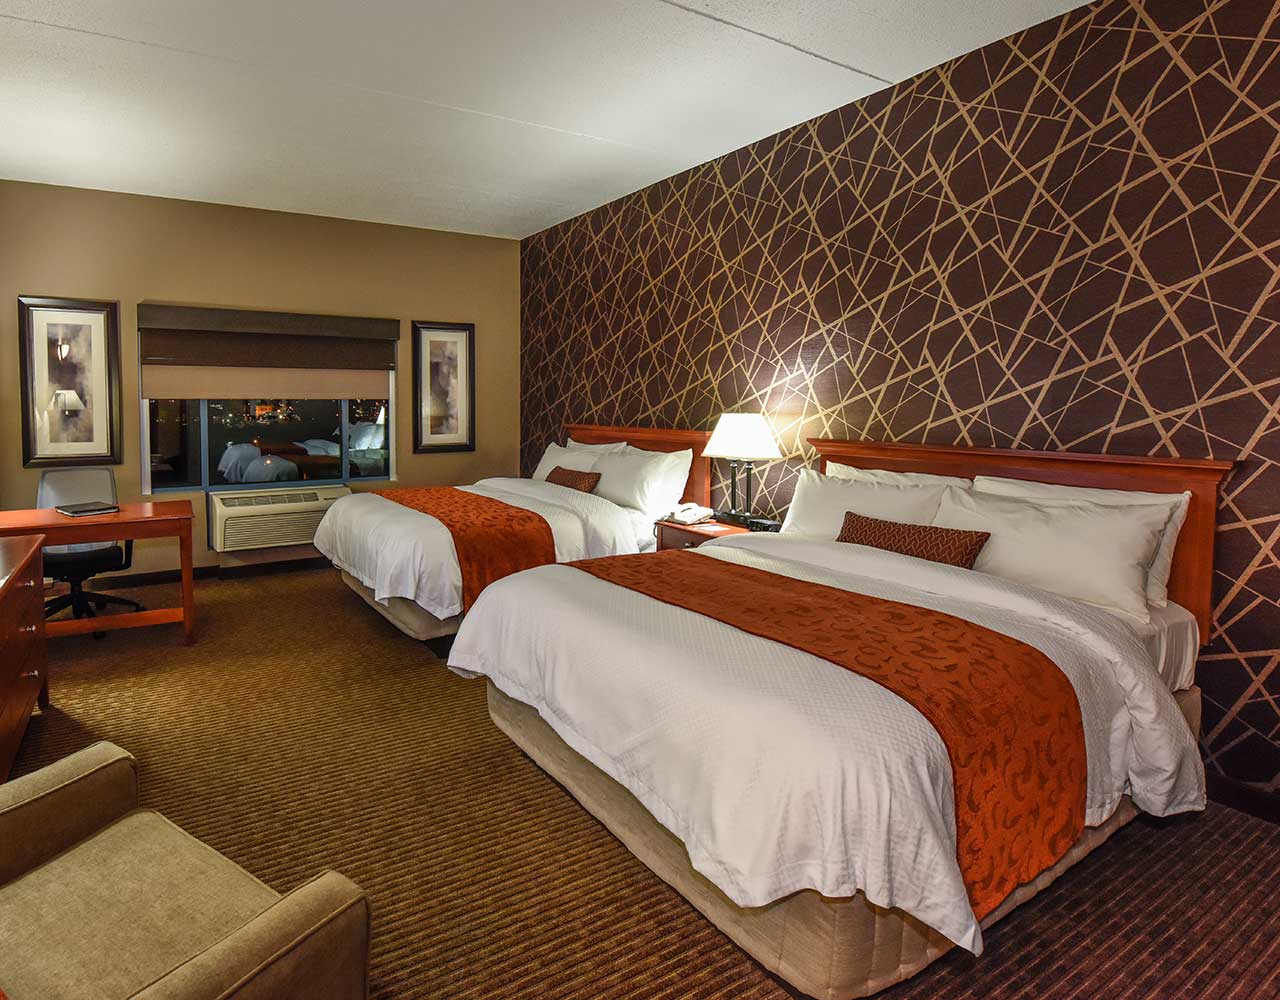 Deluxe Hotel Room With 2 Queen Beds